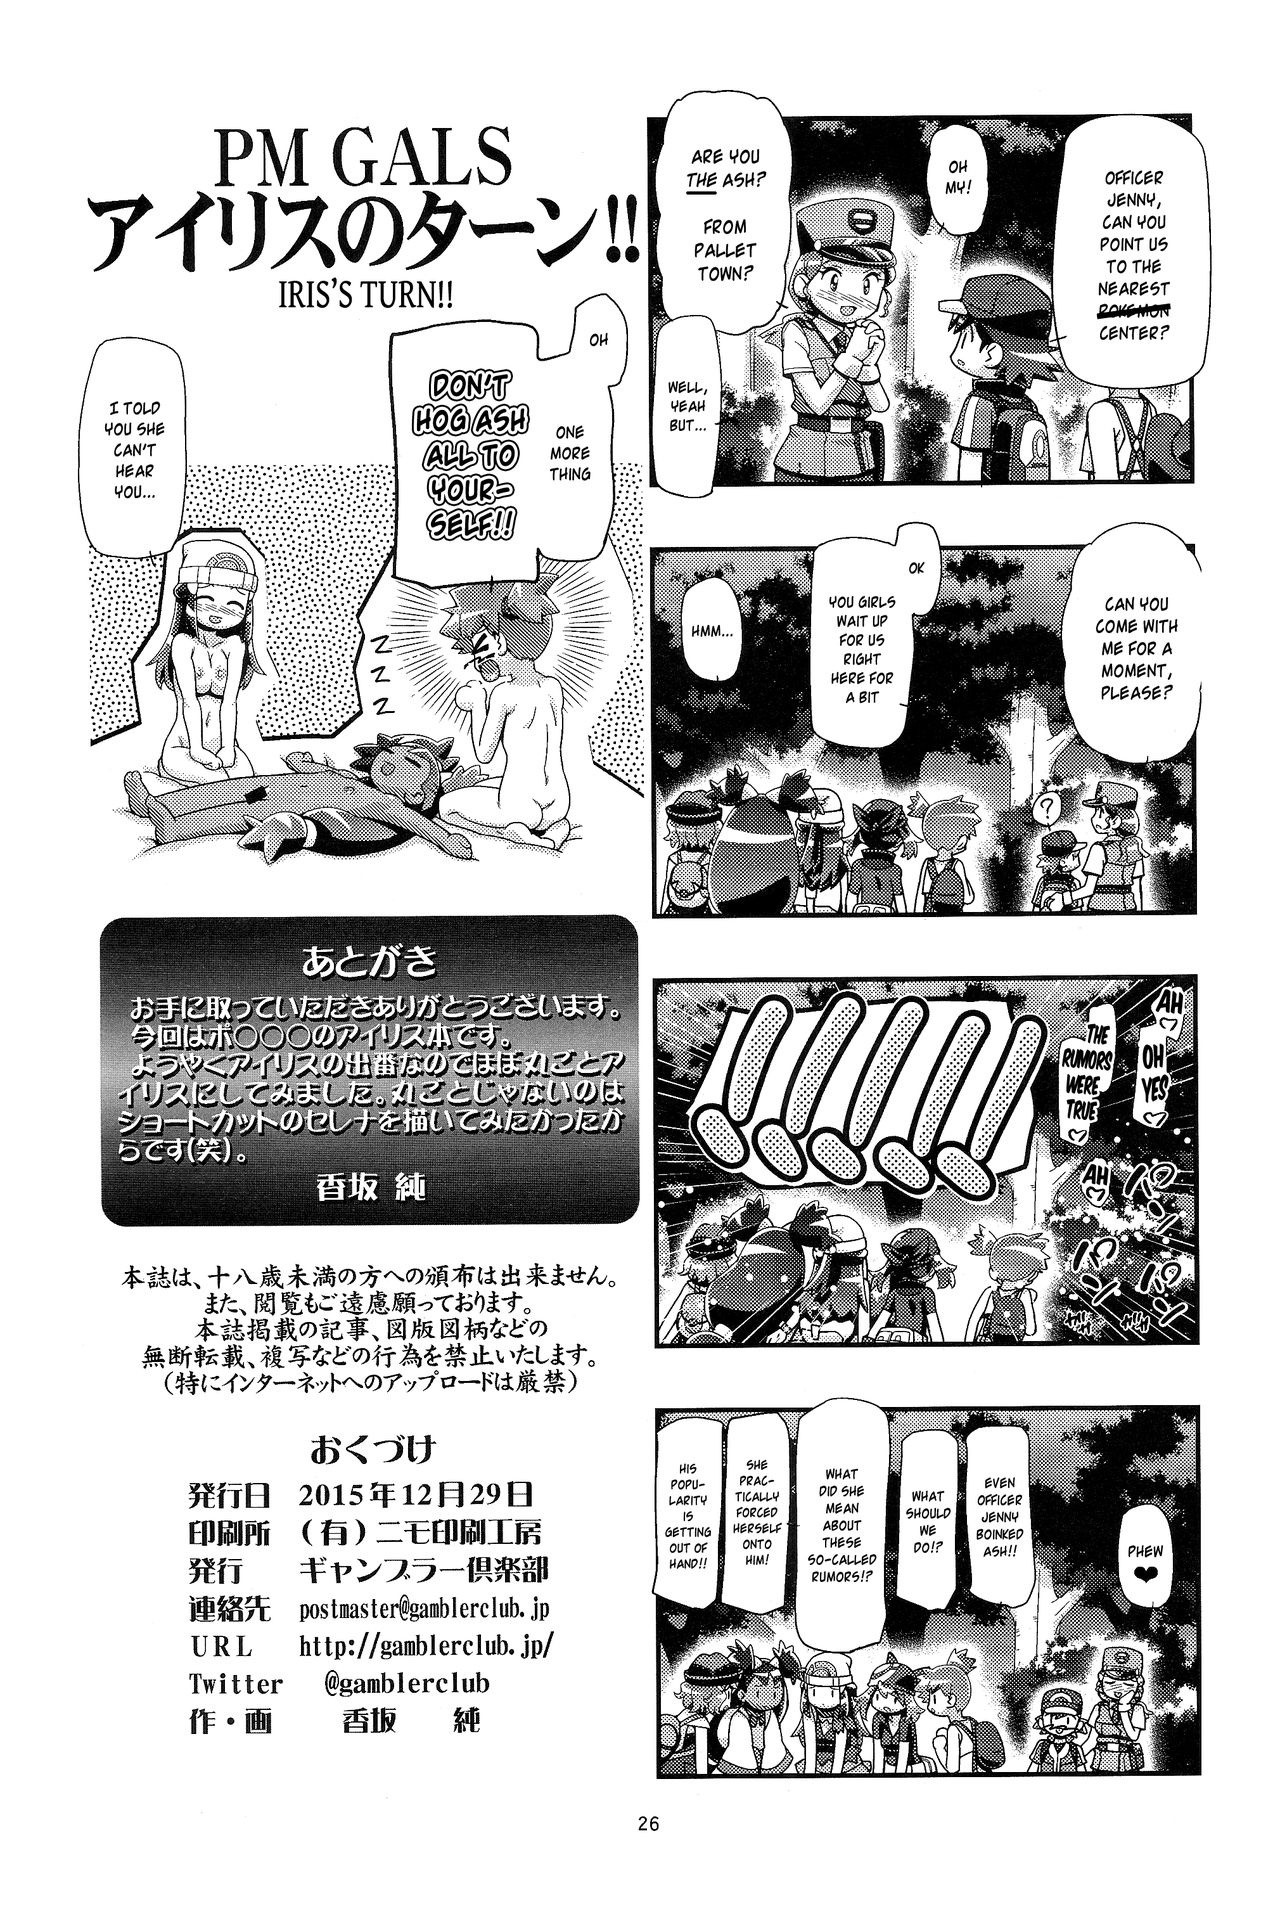 PM GALS Iris no Turn!! hentai manga picture 25